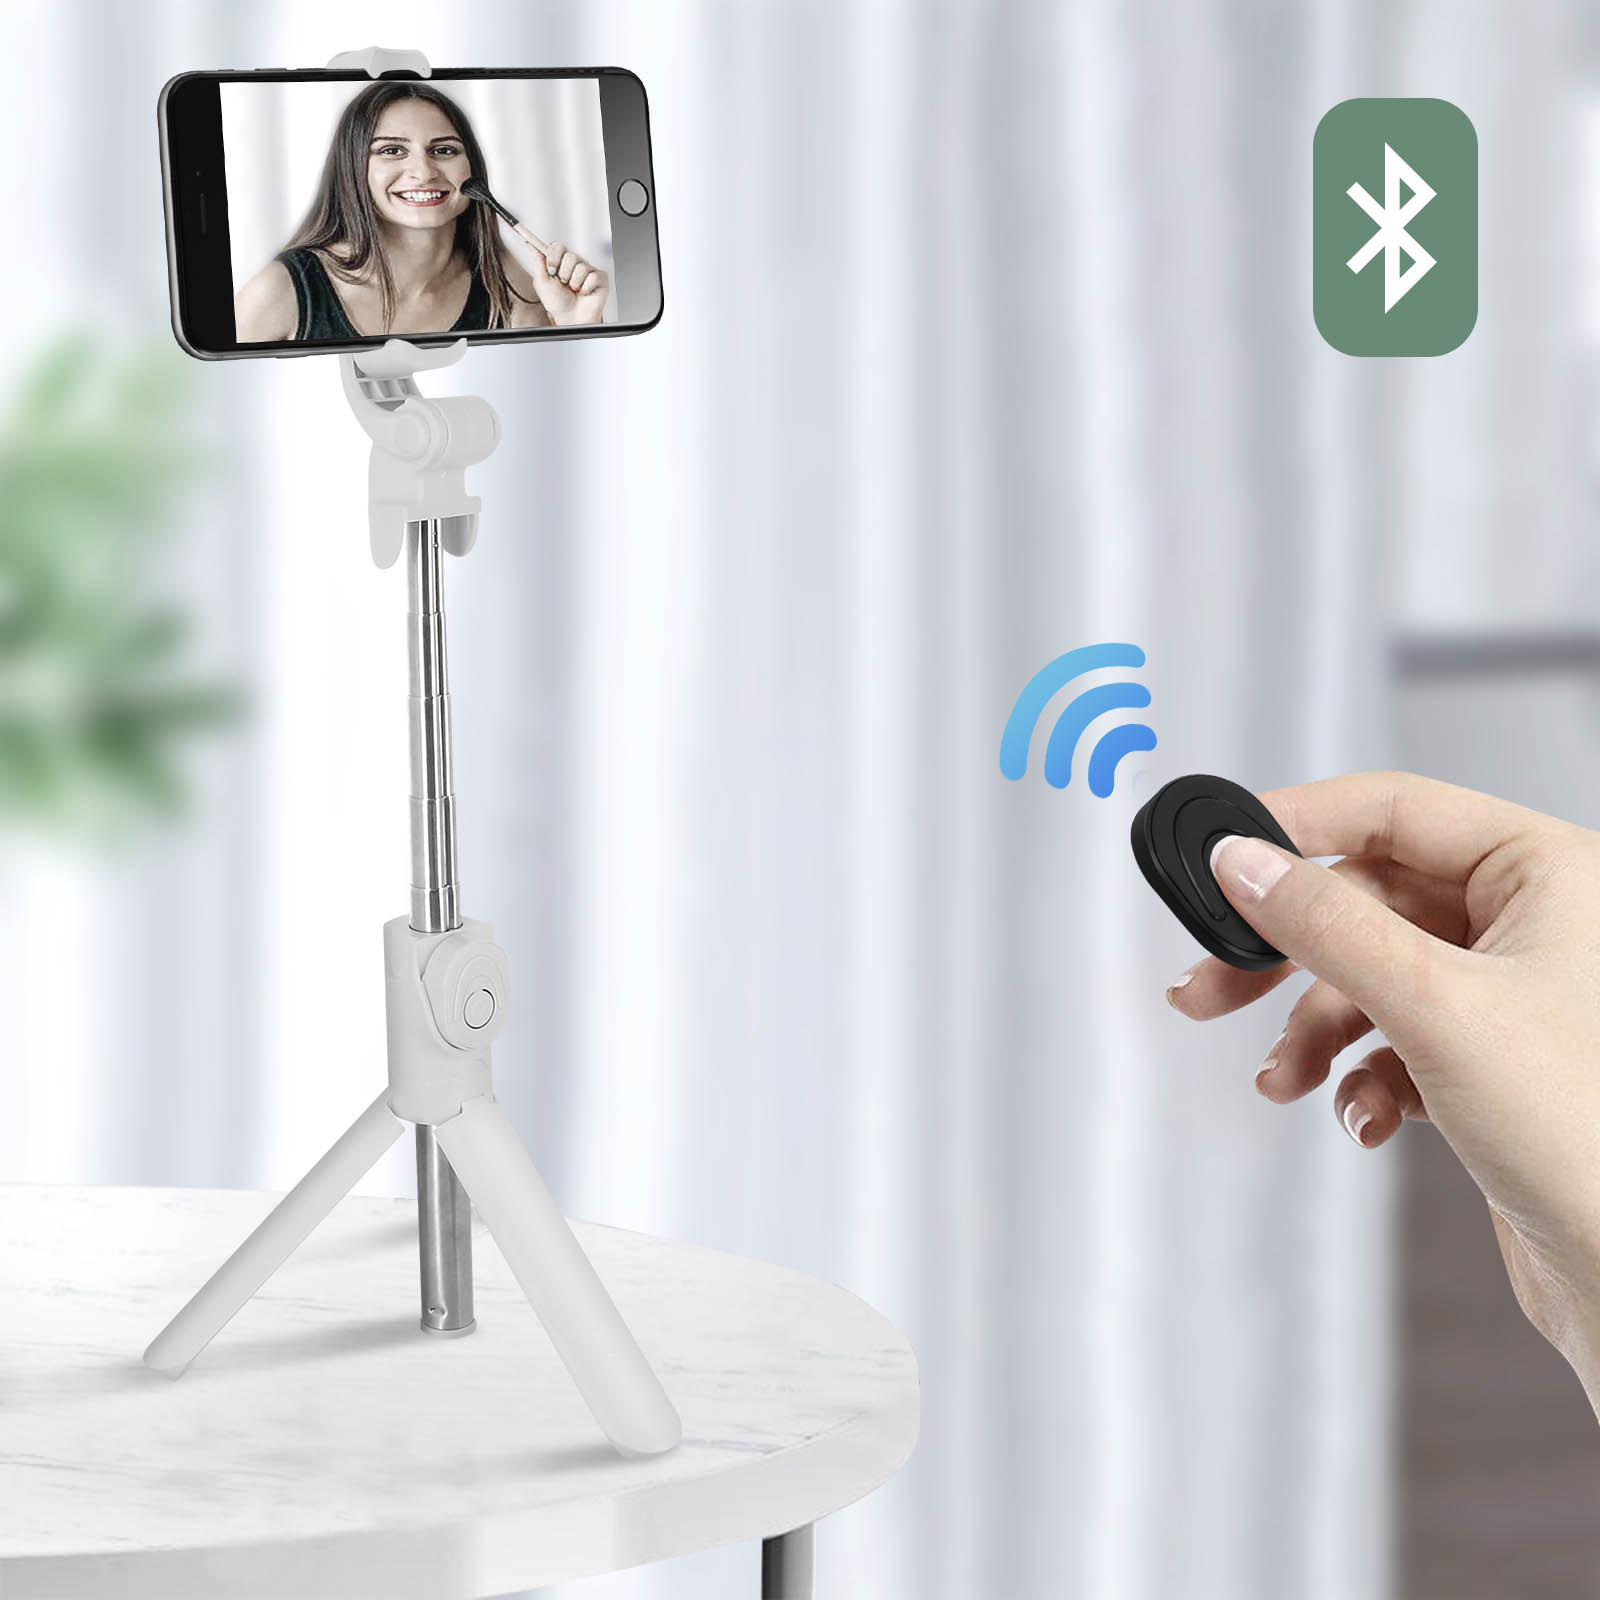 Perche Selfie avec Trepied pour Smartphone Bluetooth Sans Fil